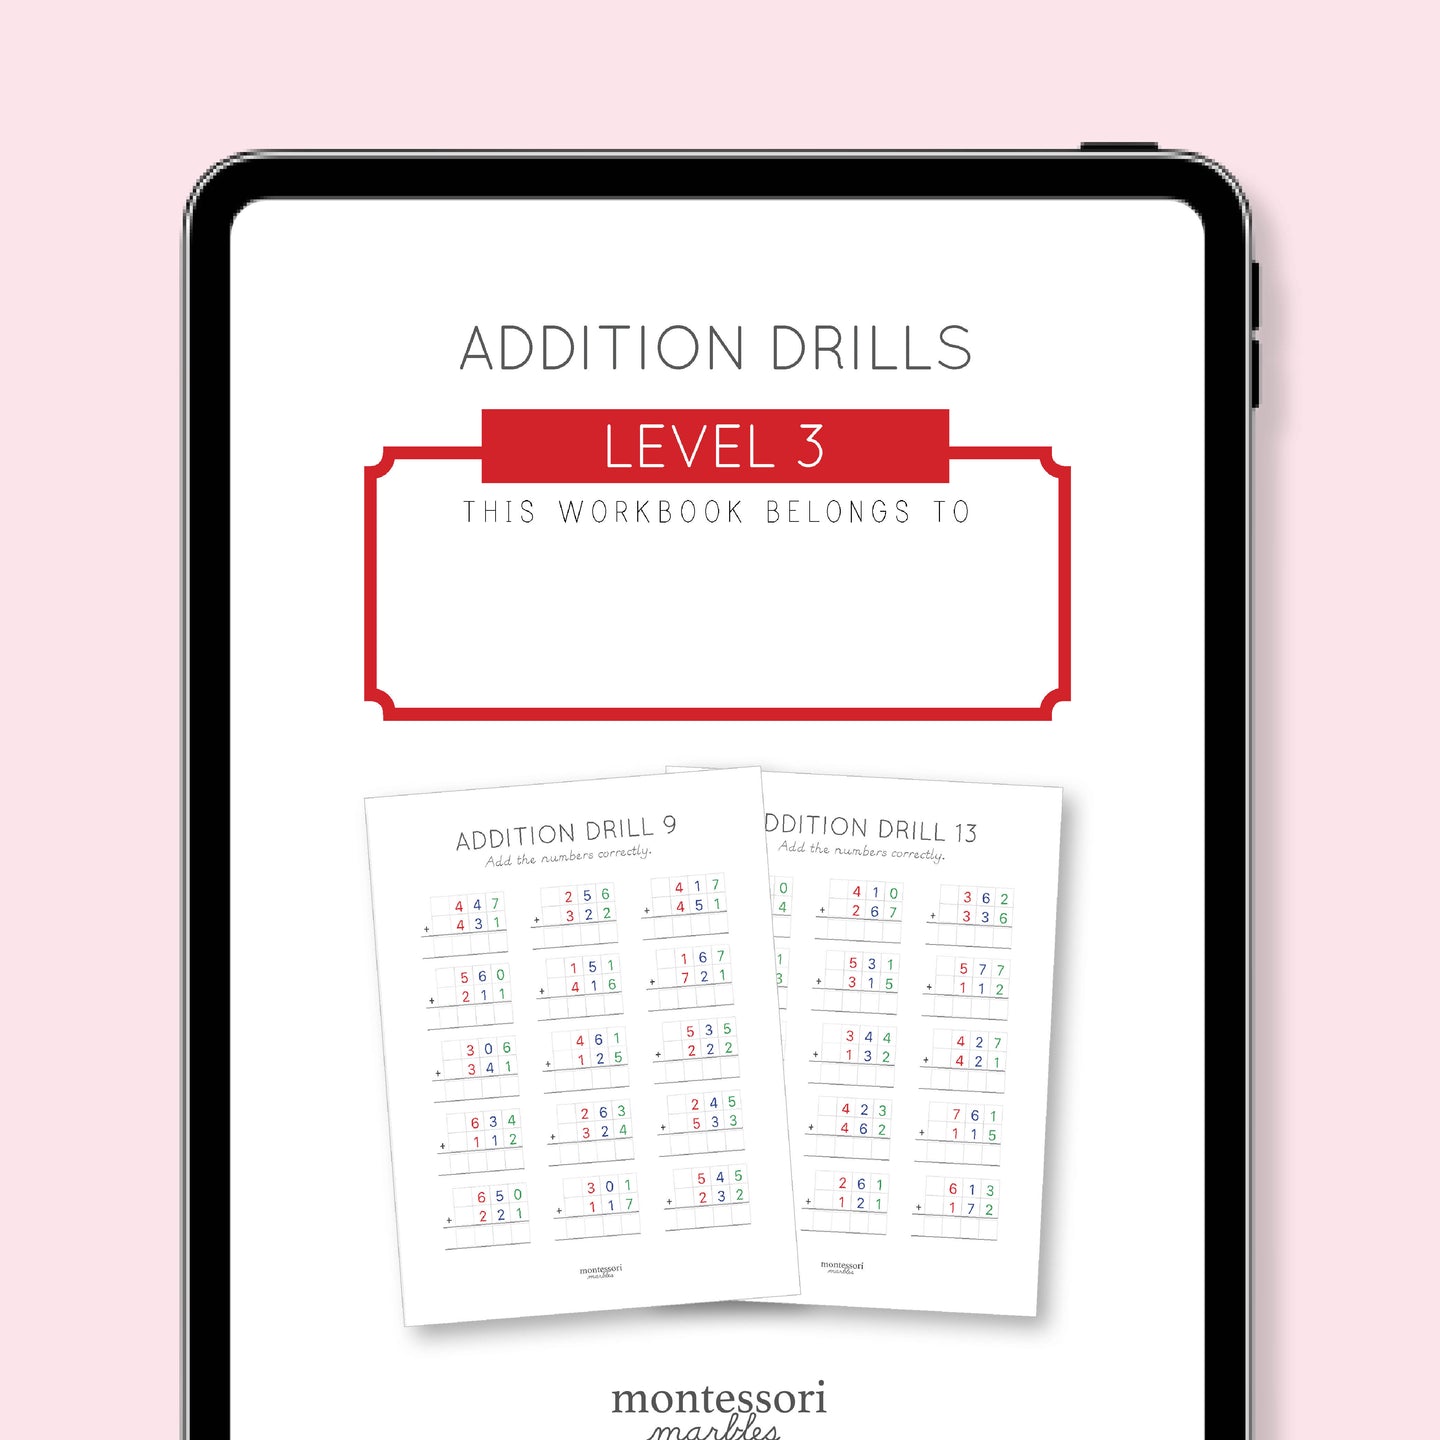 Addition Drills Workbook Level 3